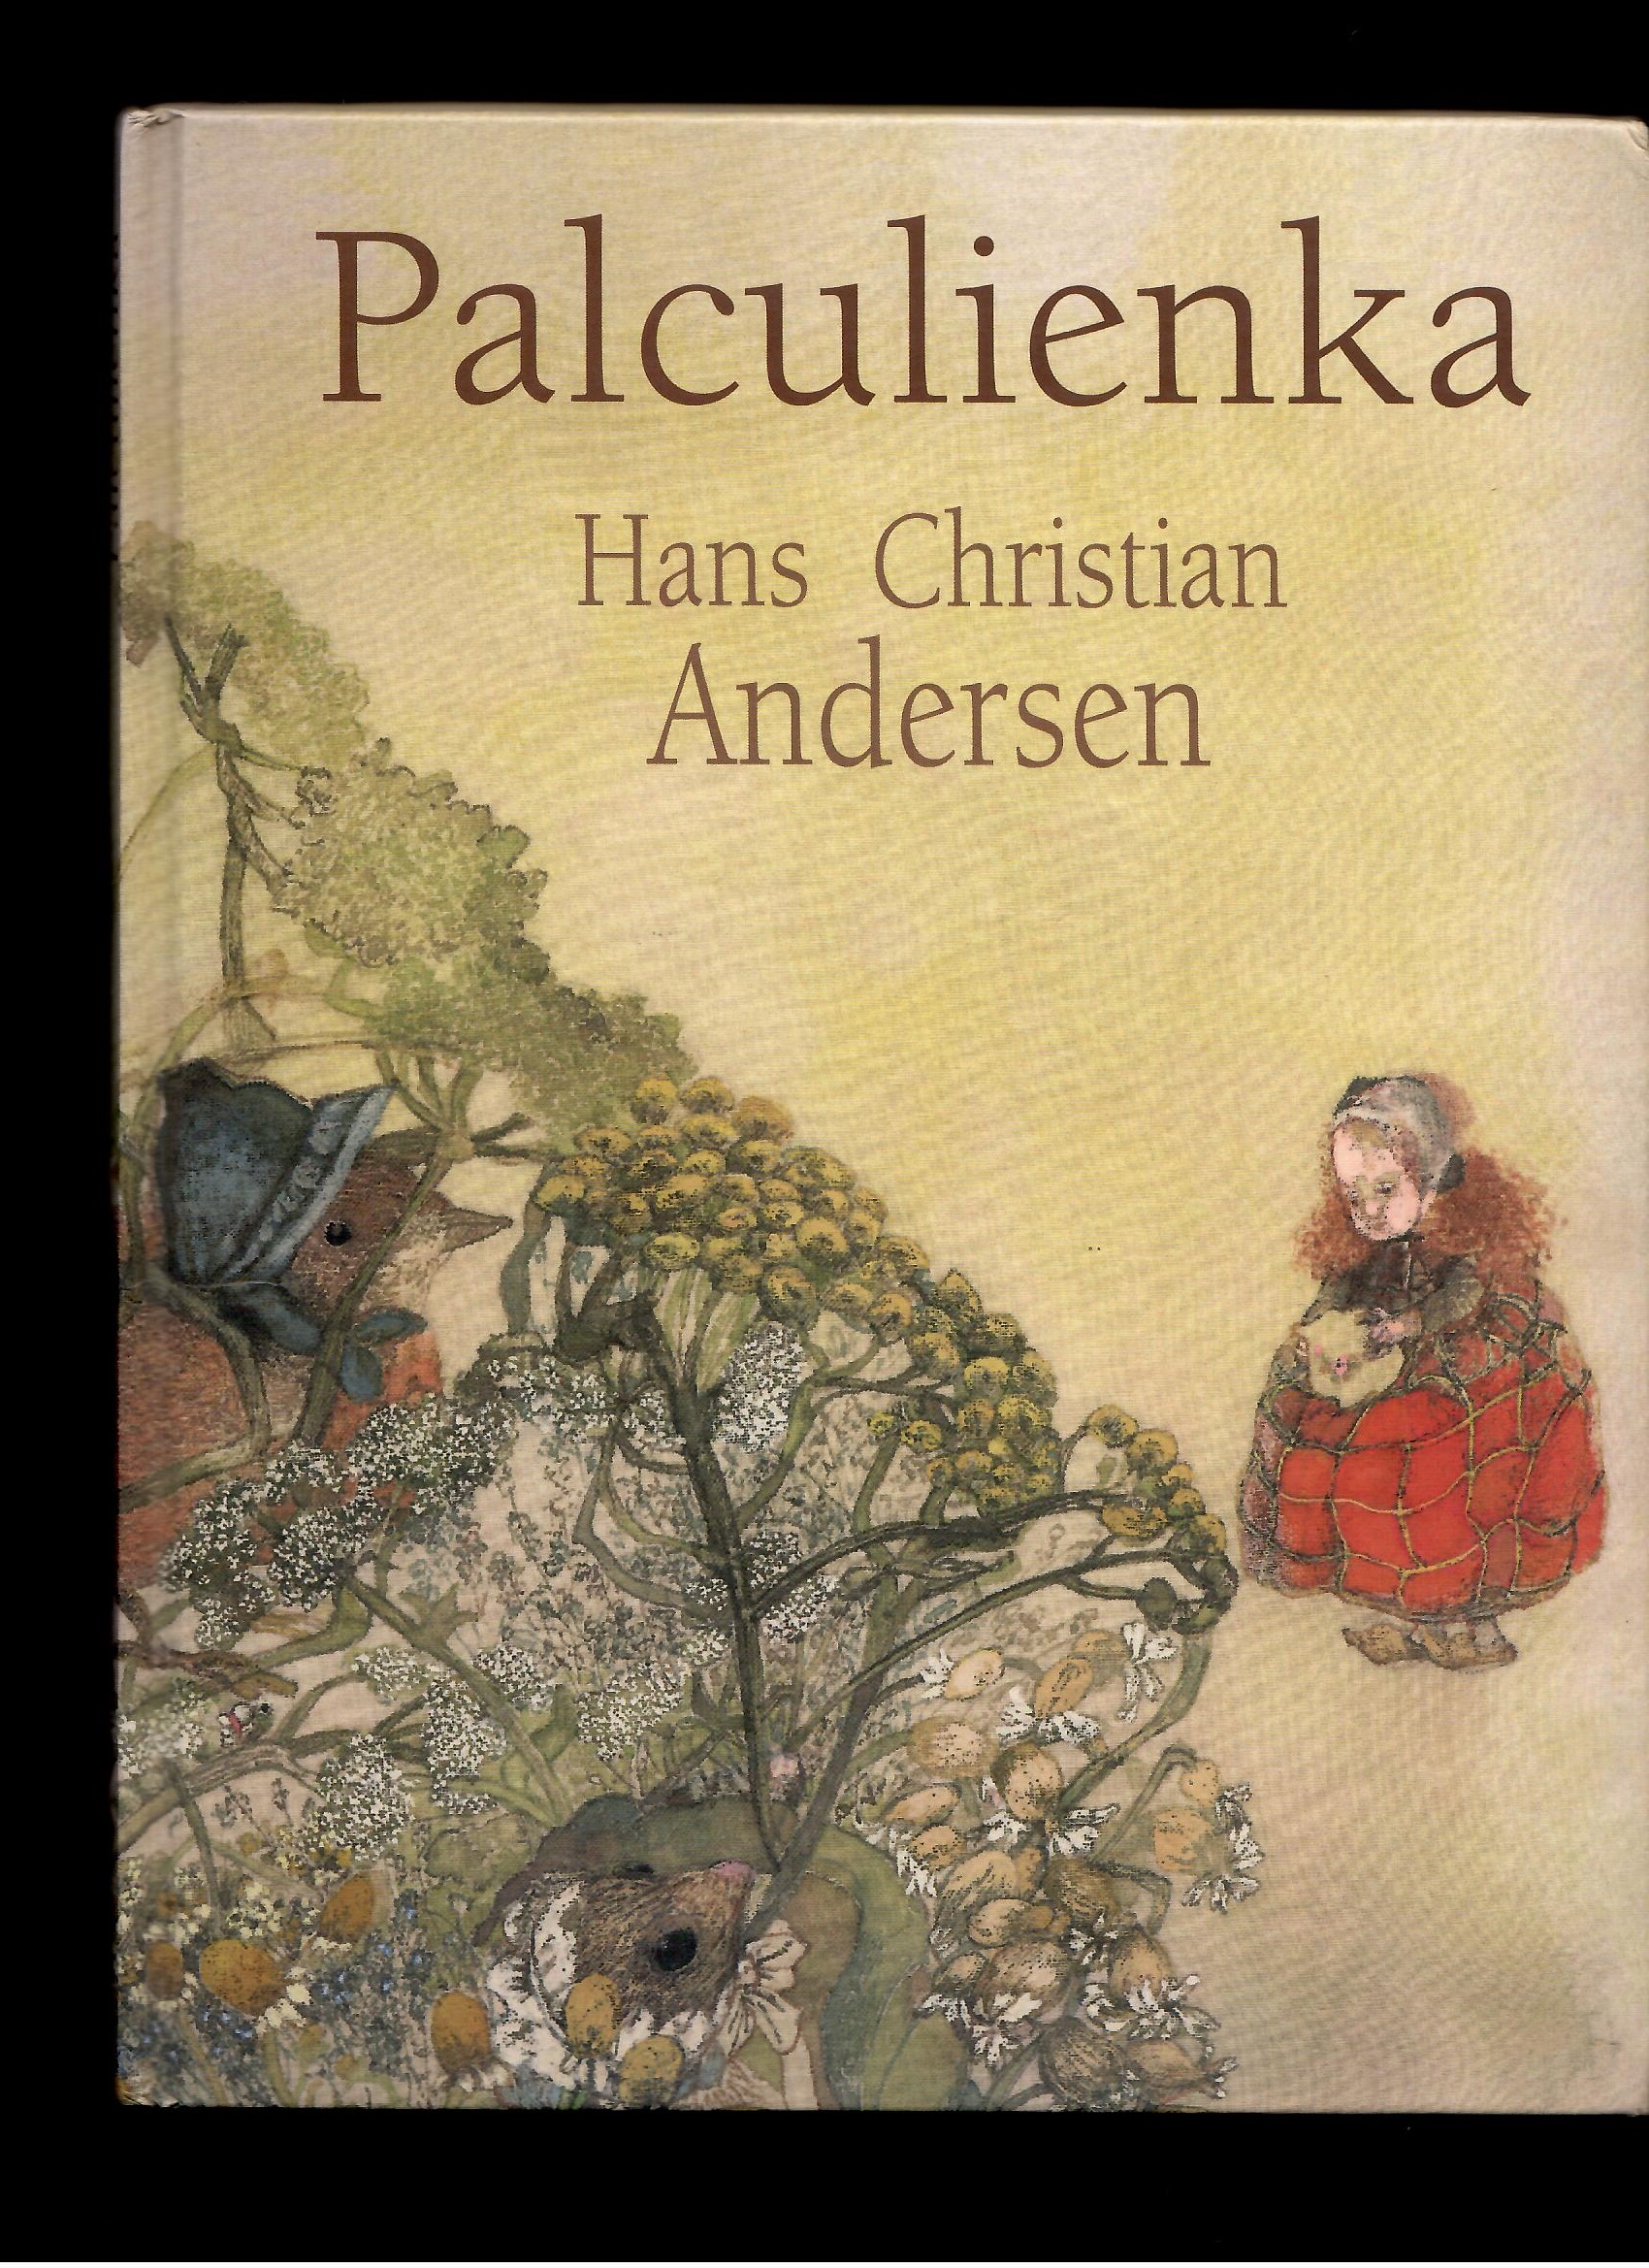 Hans Christian Andersen: Palculienka /il. Jana Kiselová-Siteková/